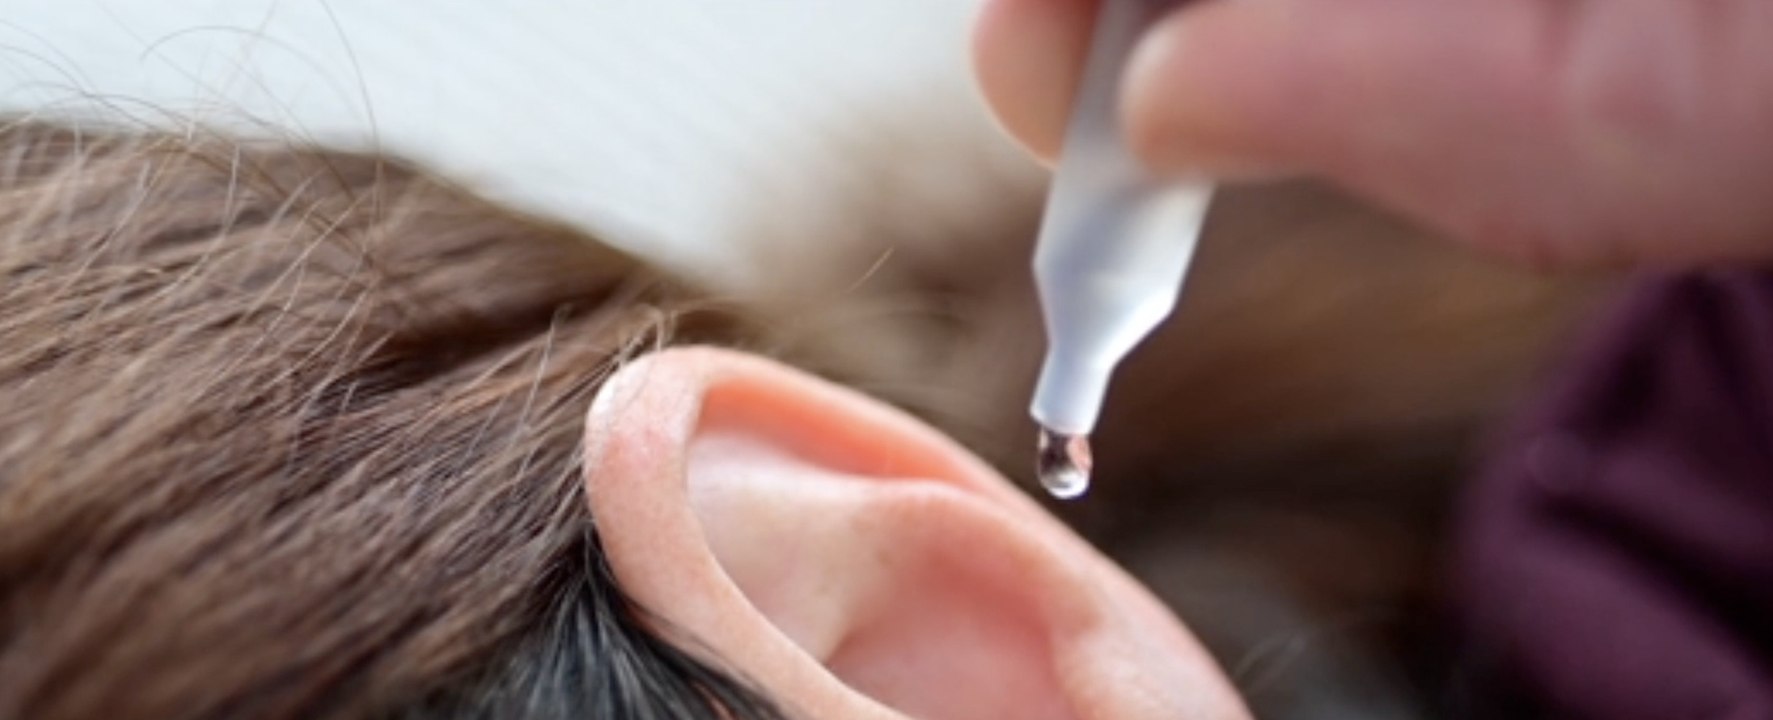 Comment nettoyer ses oreilles correctement ? - Conseils santé